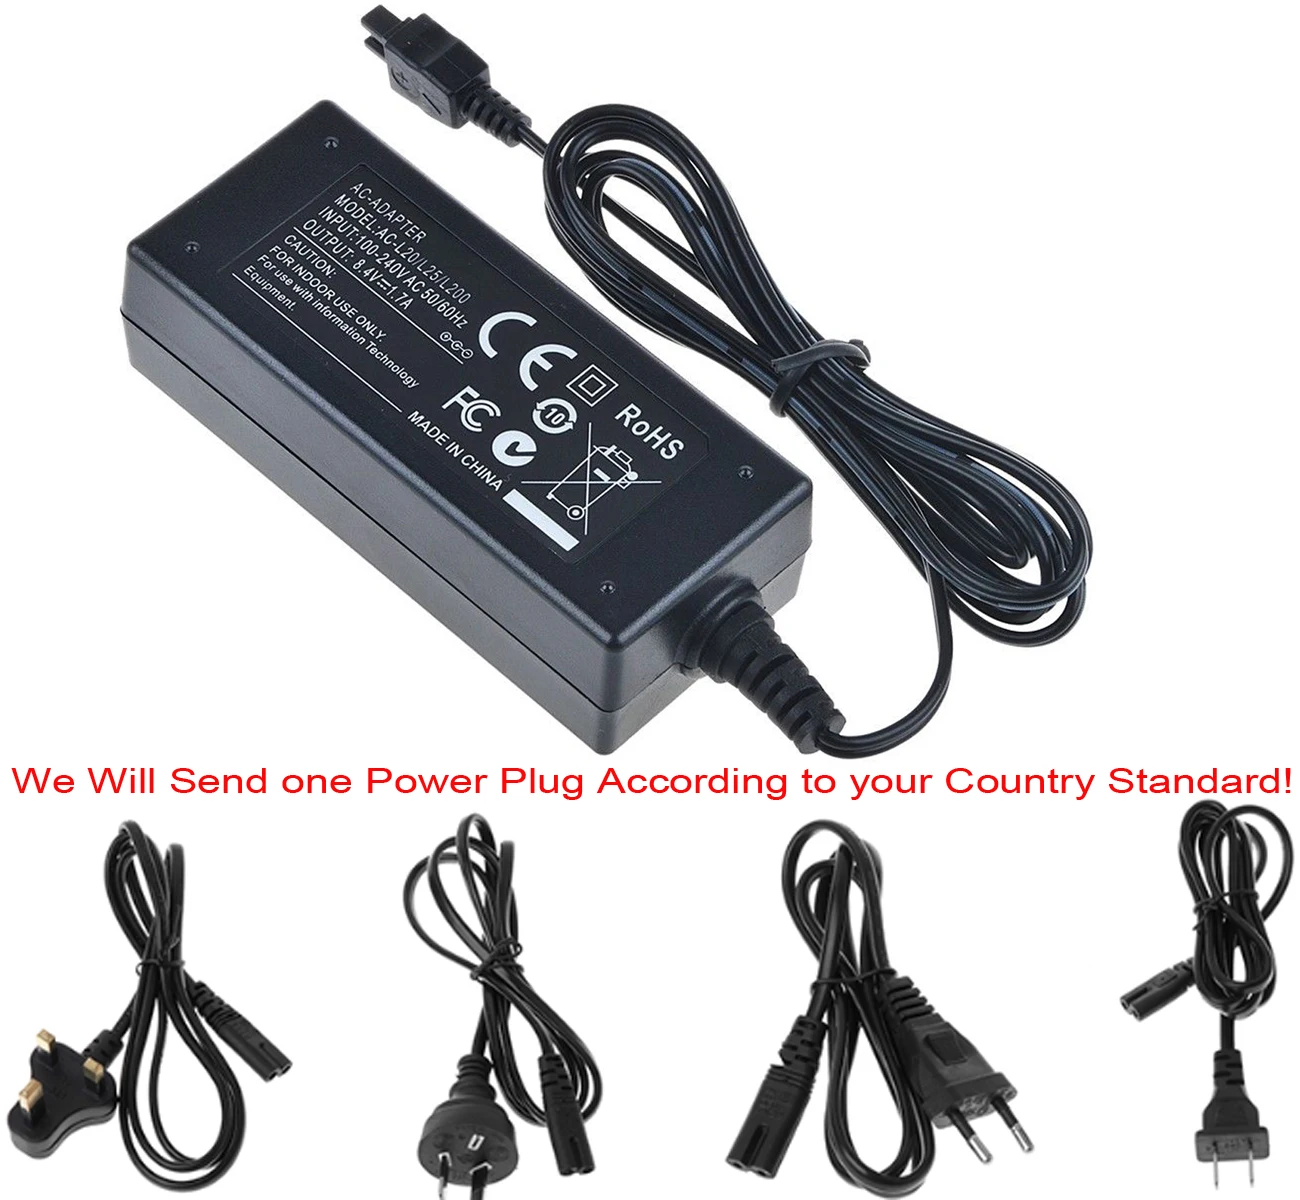 DCR-SR62 DCR-SR67 DCR-SR65 DCR-SR68 Handycam Camcorder LCD USB Battery Charger for Sony DCR-SR60